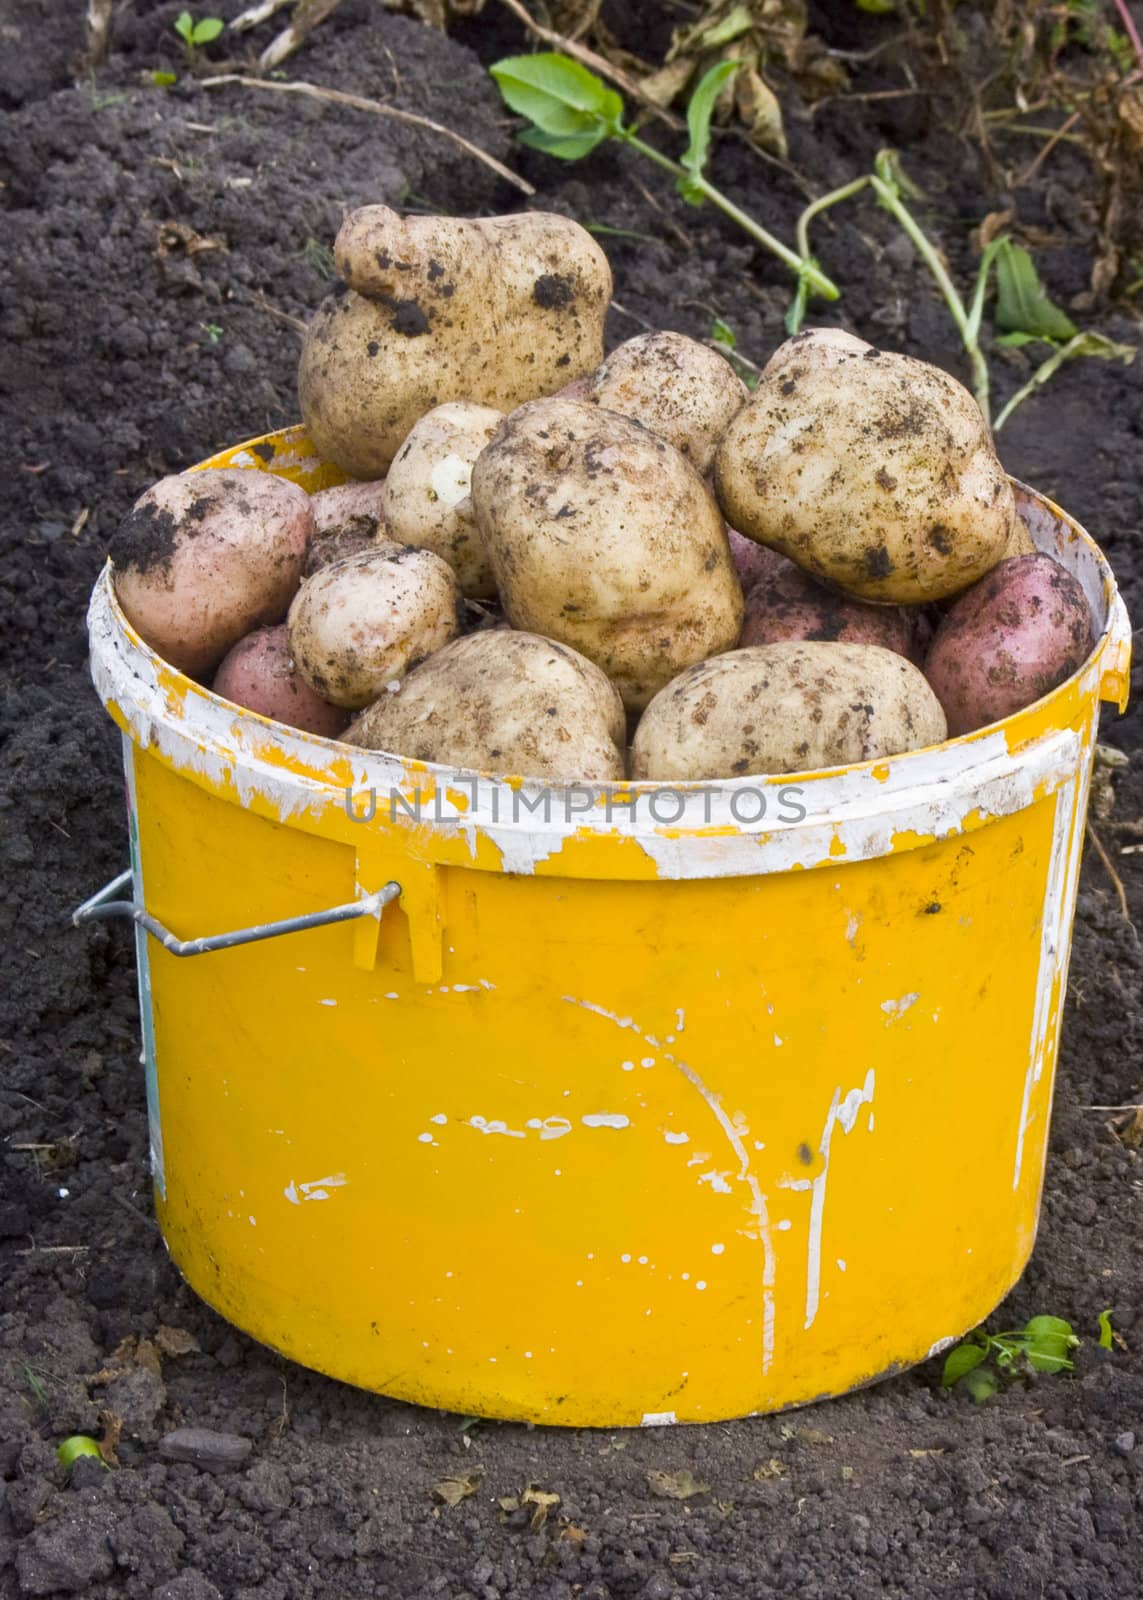 A potato bucket by soloir